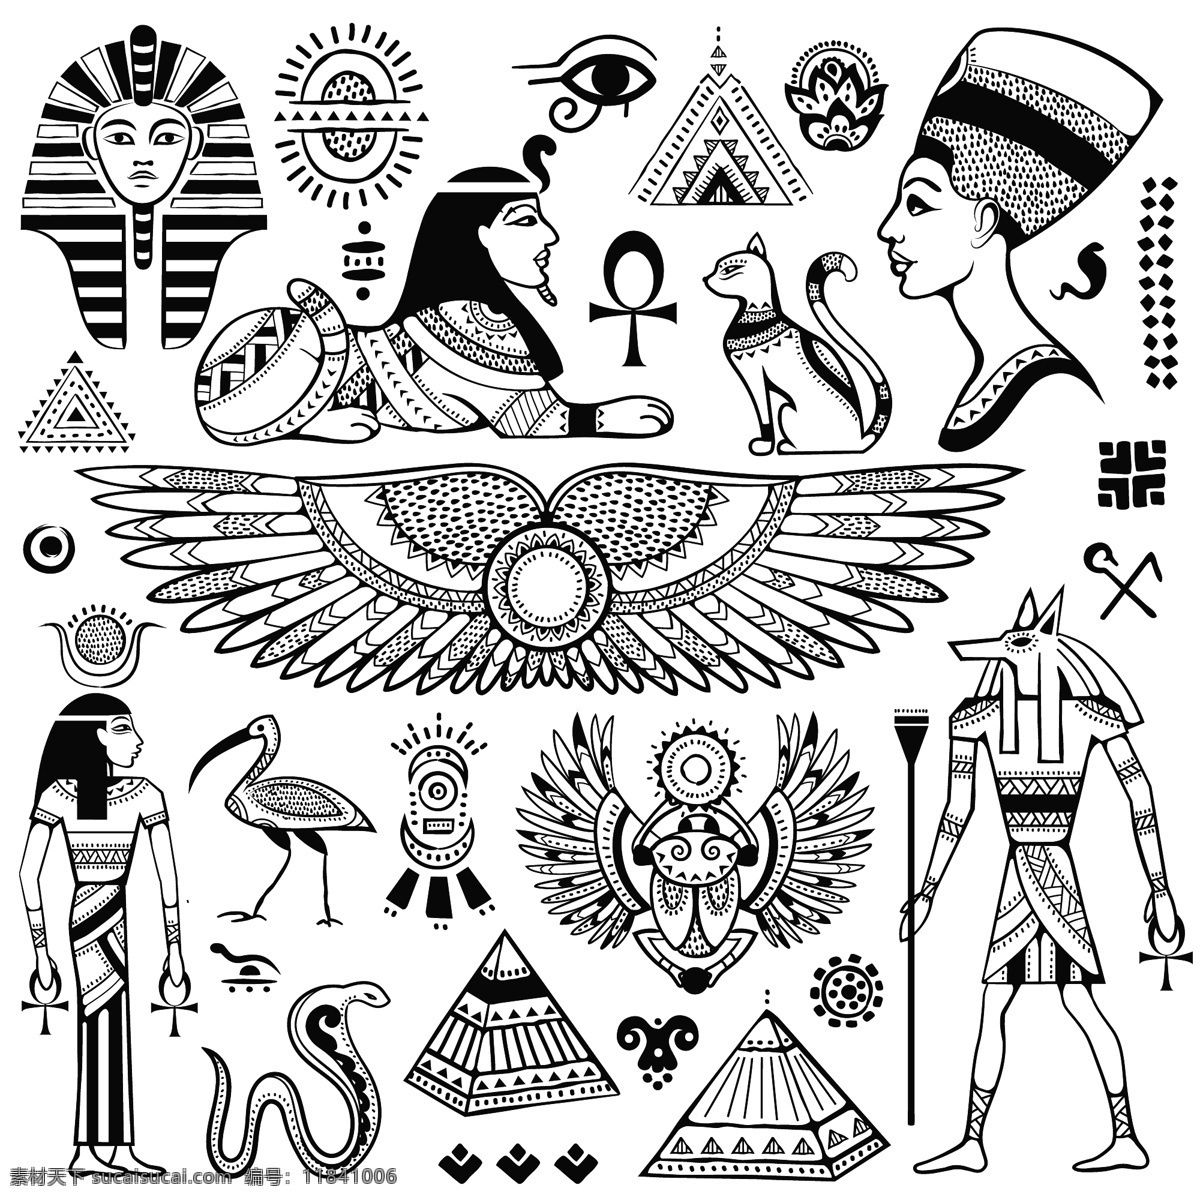 古埃及文字 符号 古埃及符号 罗马 古罗马 非洲动物 人物 象形文字 古埃及文化 古代文字 书画文字 文化艺术 eps格式 传统文化